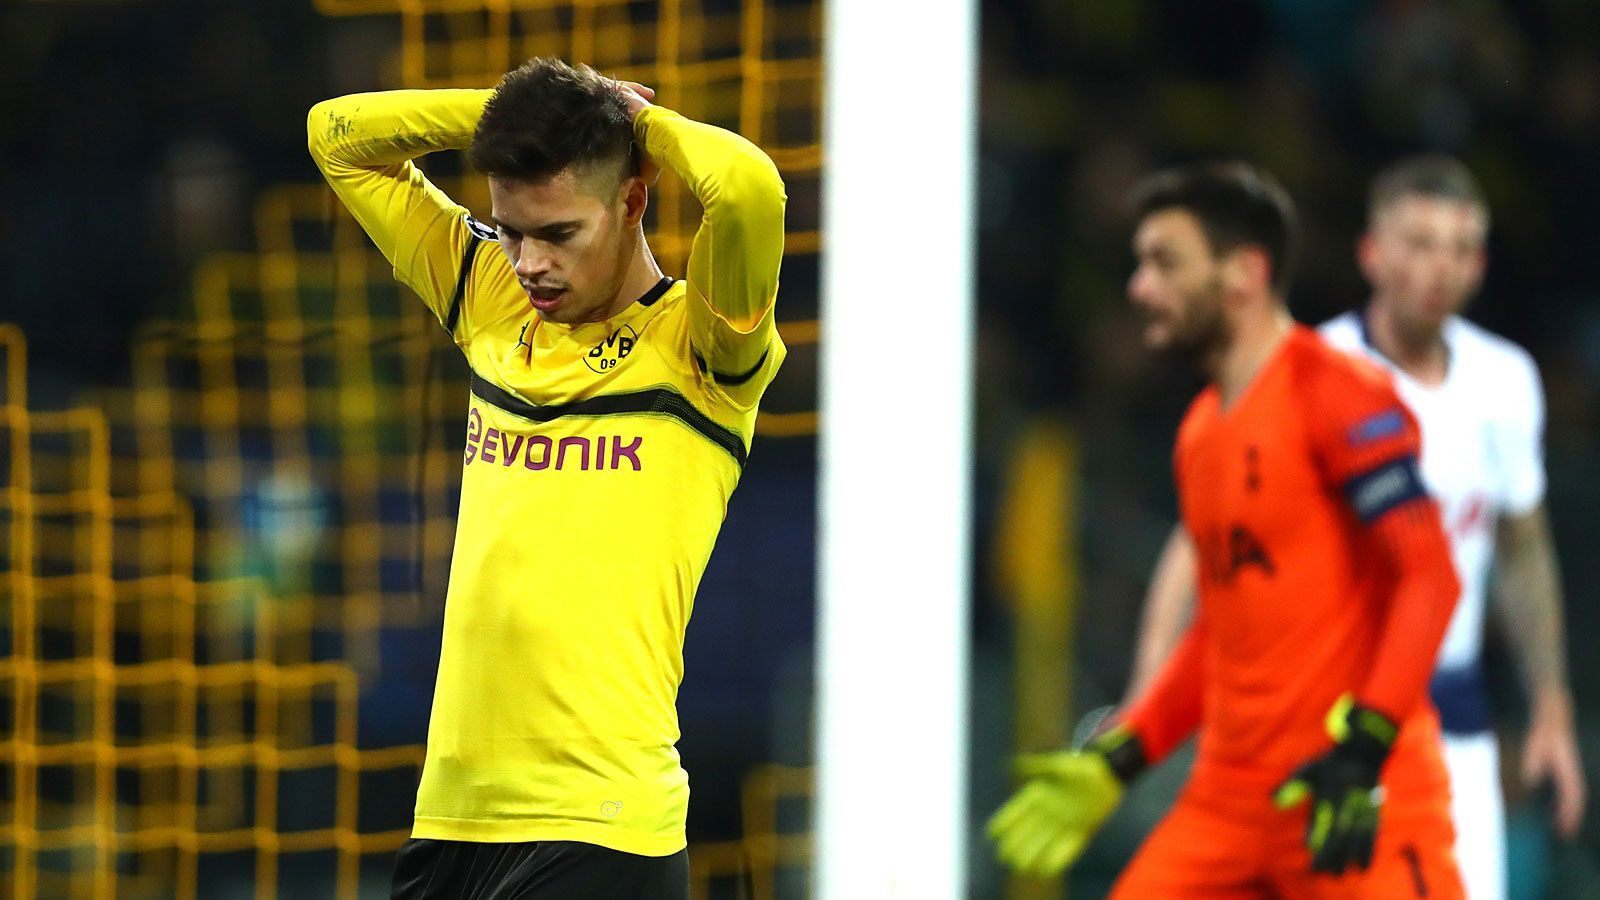 
                <strong>Dortmund vs. Tottenham</strong><br>
                Der BVB hoffte auf ein Wunder, aber vergeblich! Nach dem 0:1 gegen Tottenham Hotspur ist Borussia Dortmund aus der Champions League ausgeschieden. Die Einzelkritik der BVB-Stars.
              